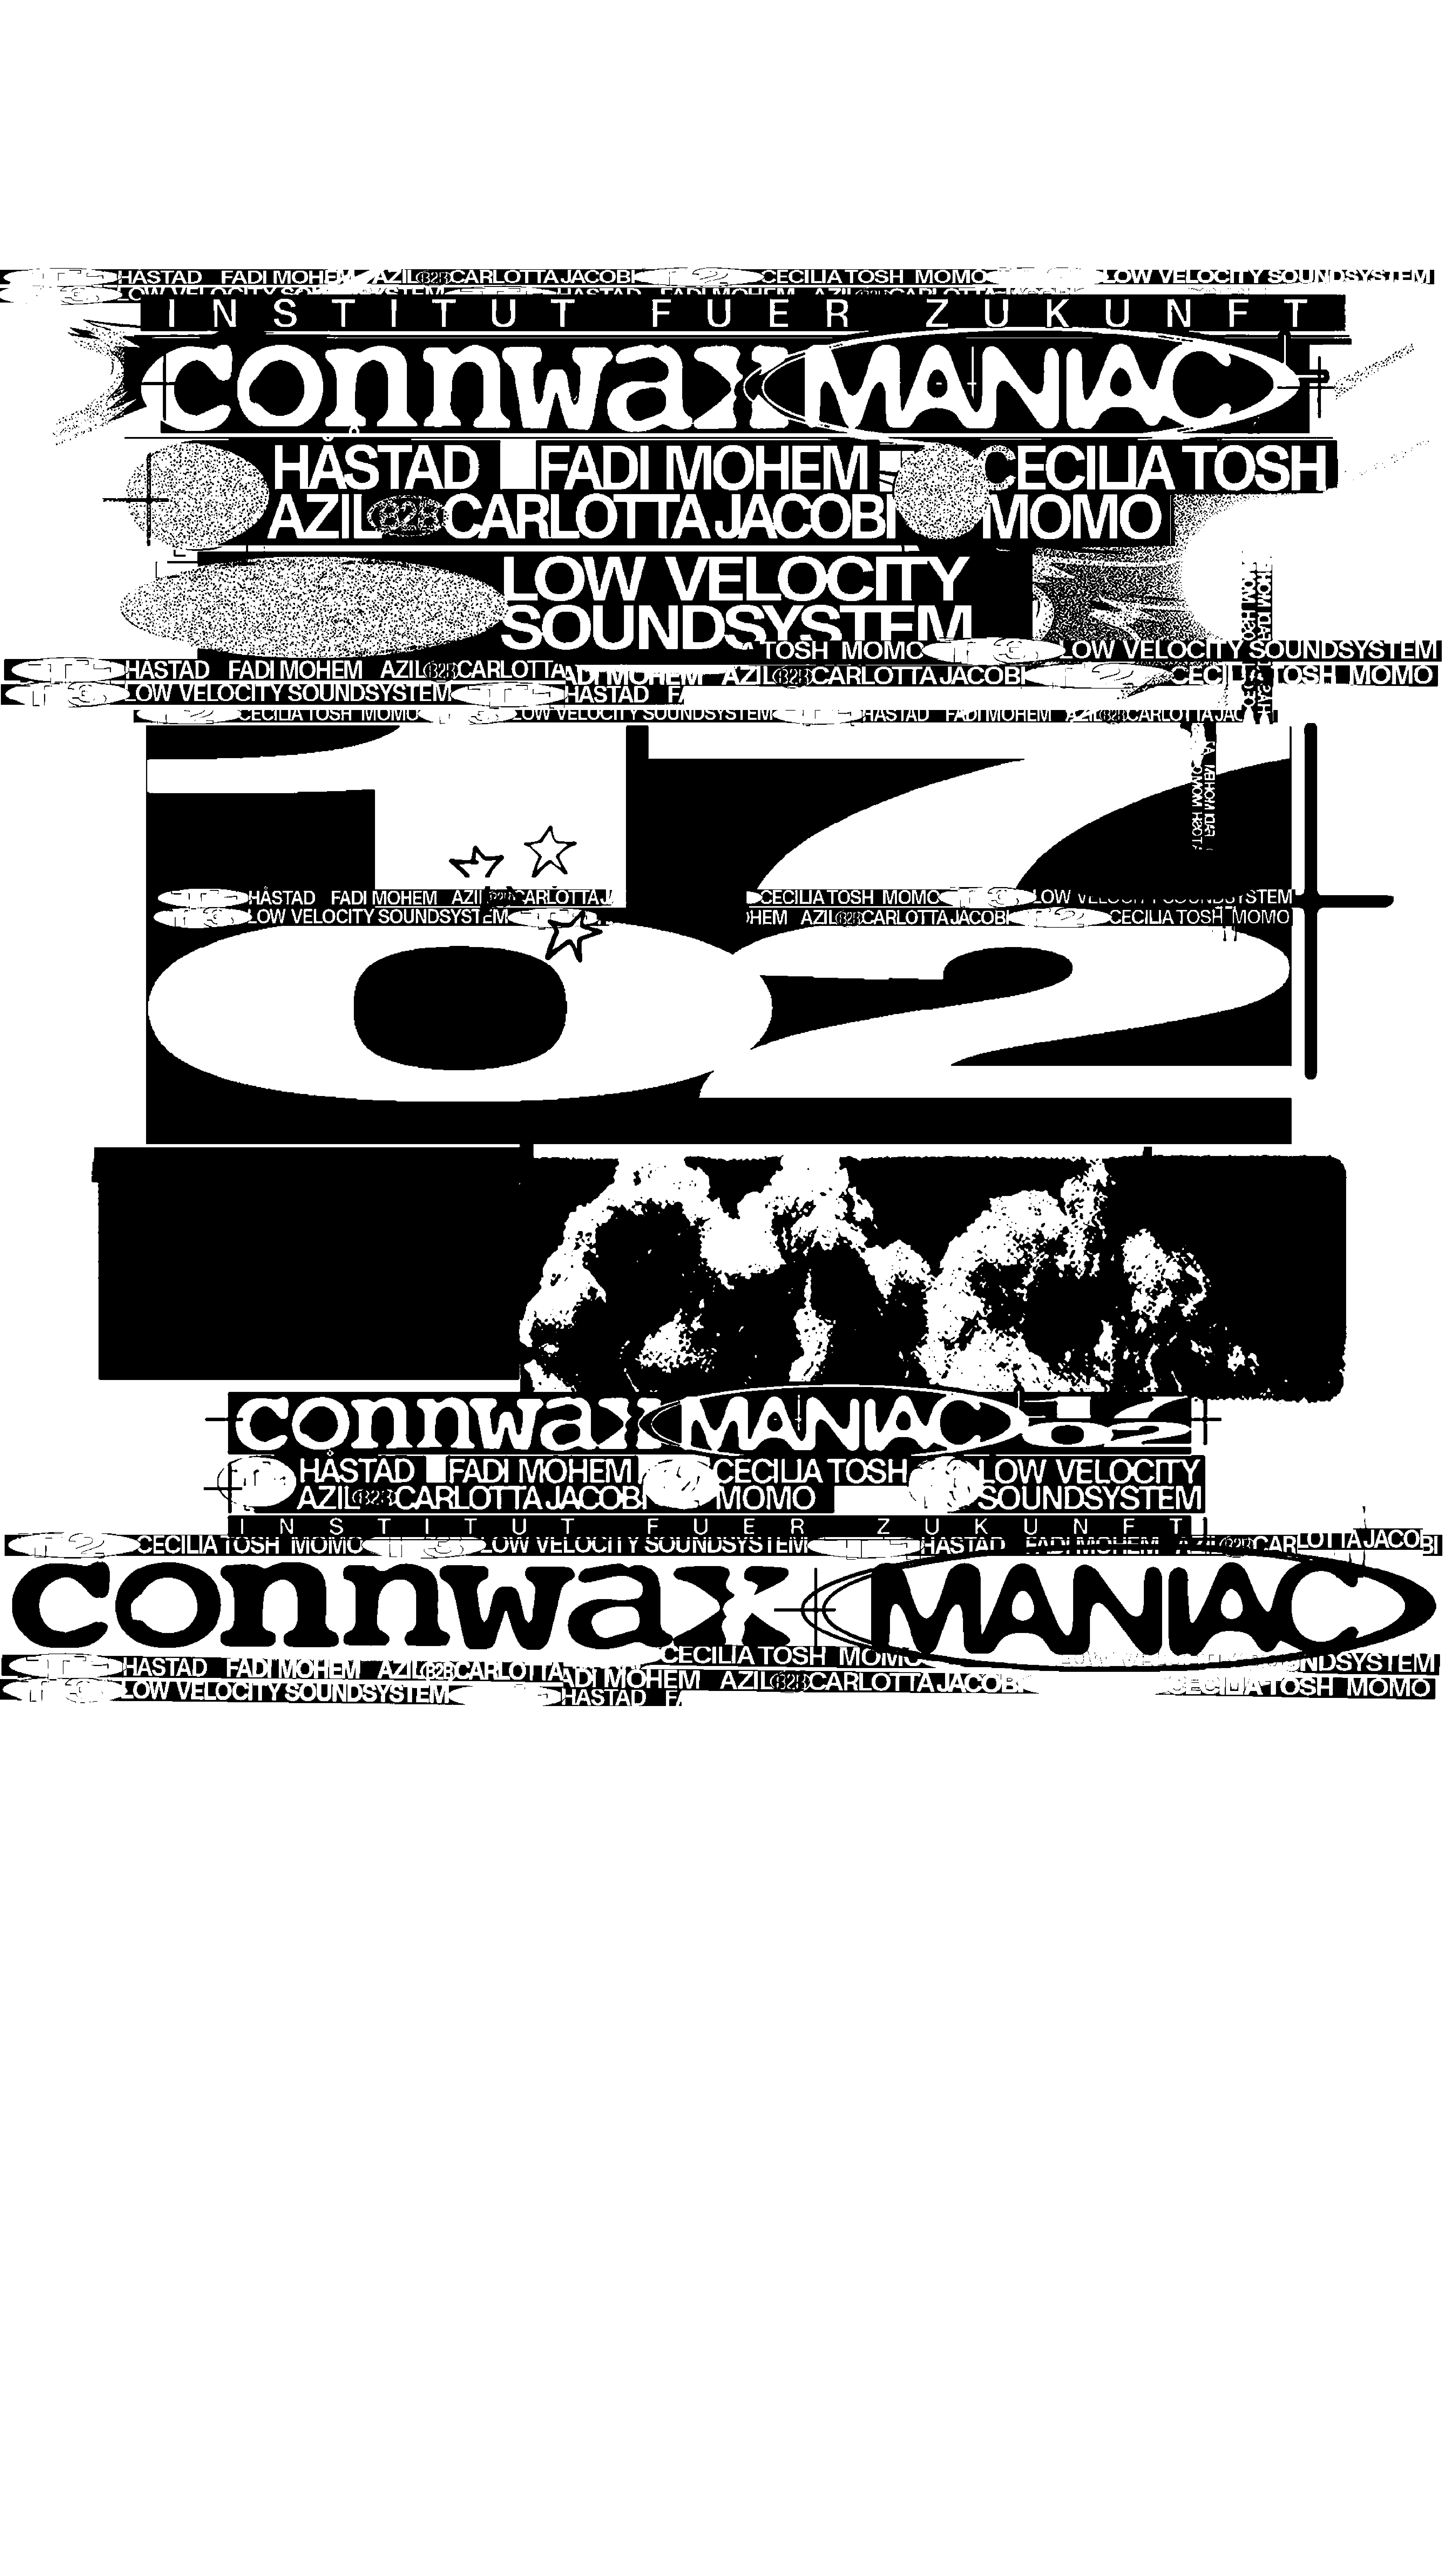 CONNWAX x MANIAC - Página frontal